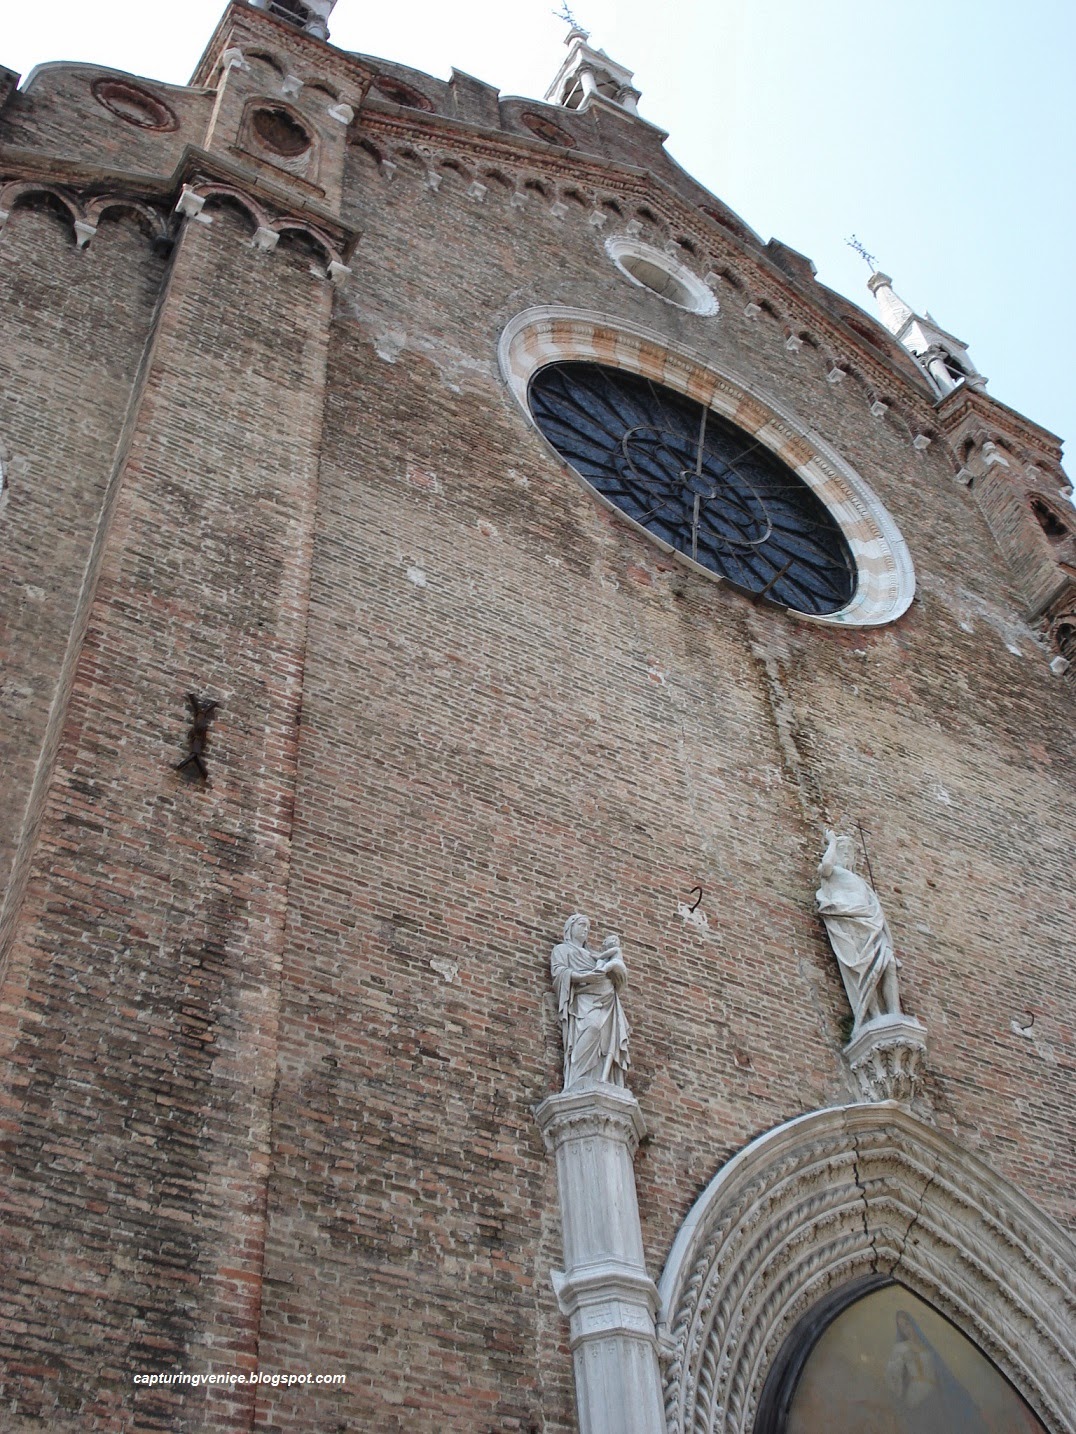 Entry to the Frari church, Venice capturingvenice.blogspot.com